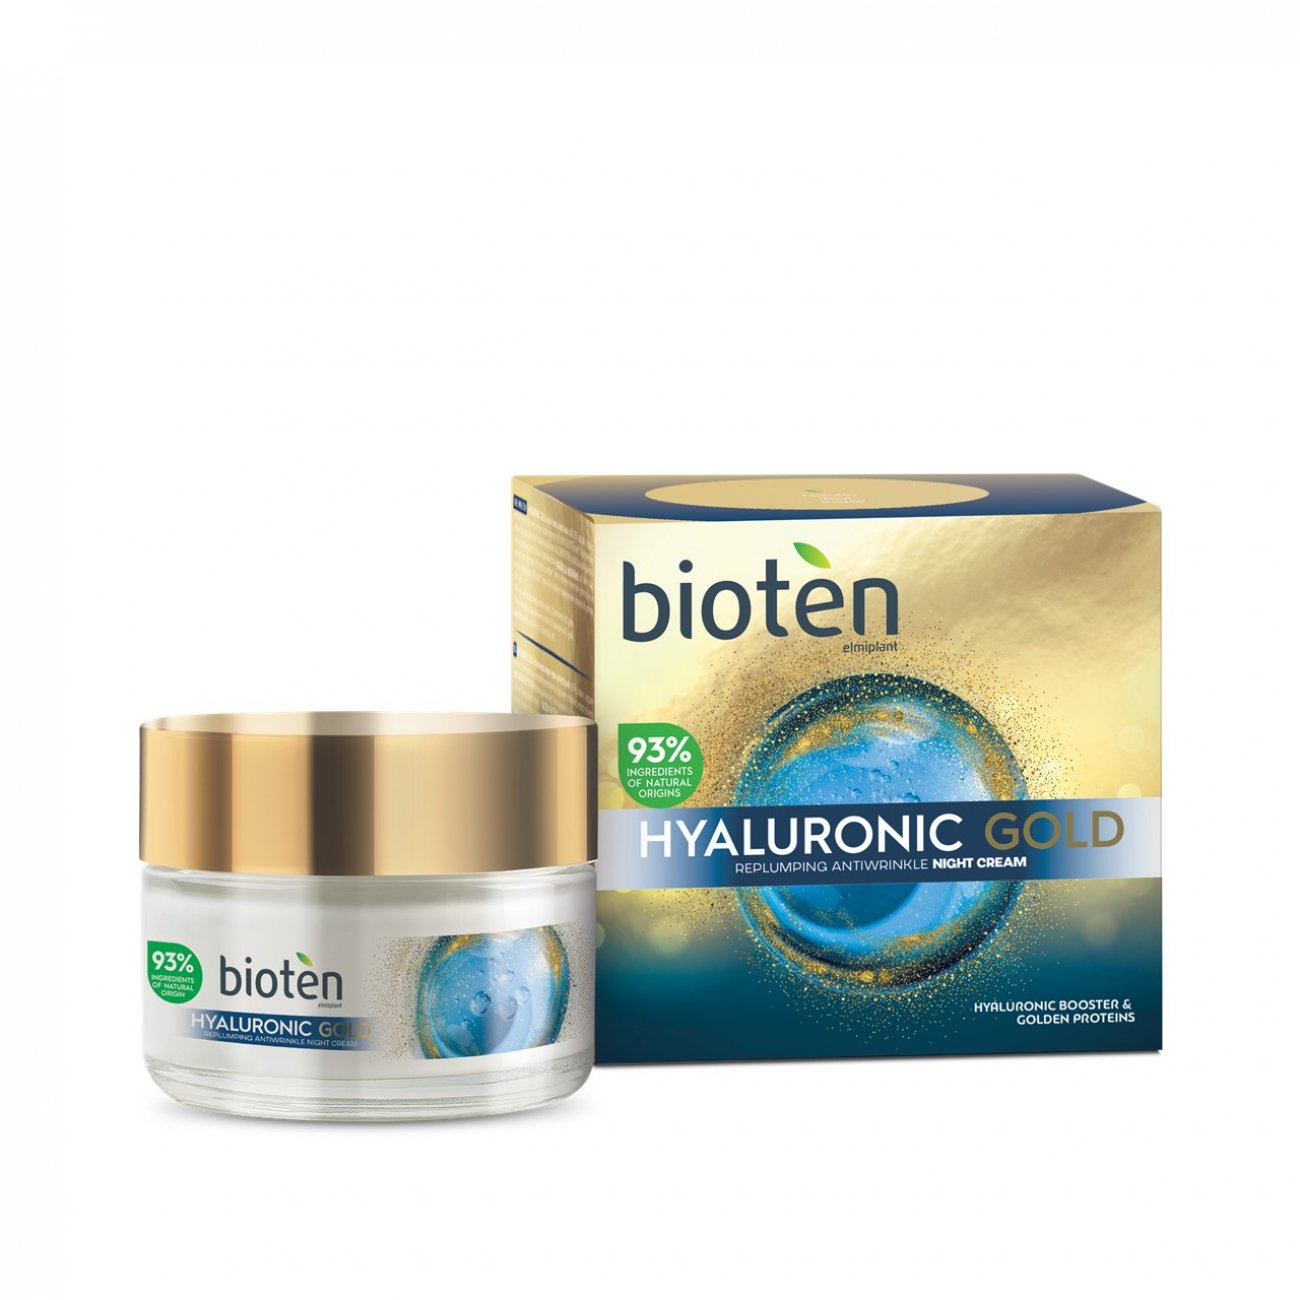 bioten Hyaluronic Gold Night Cream 50ml